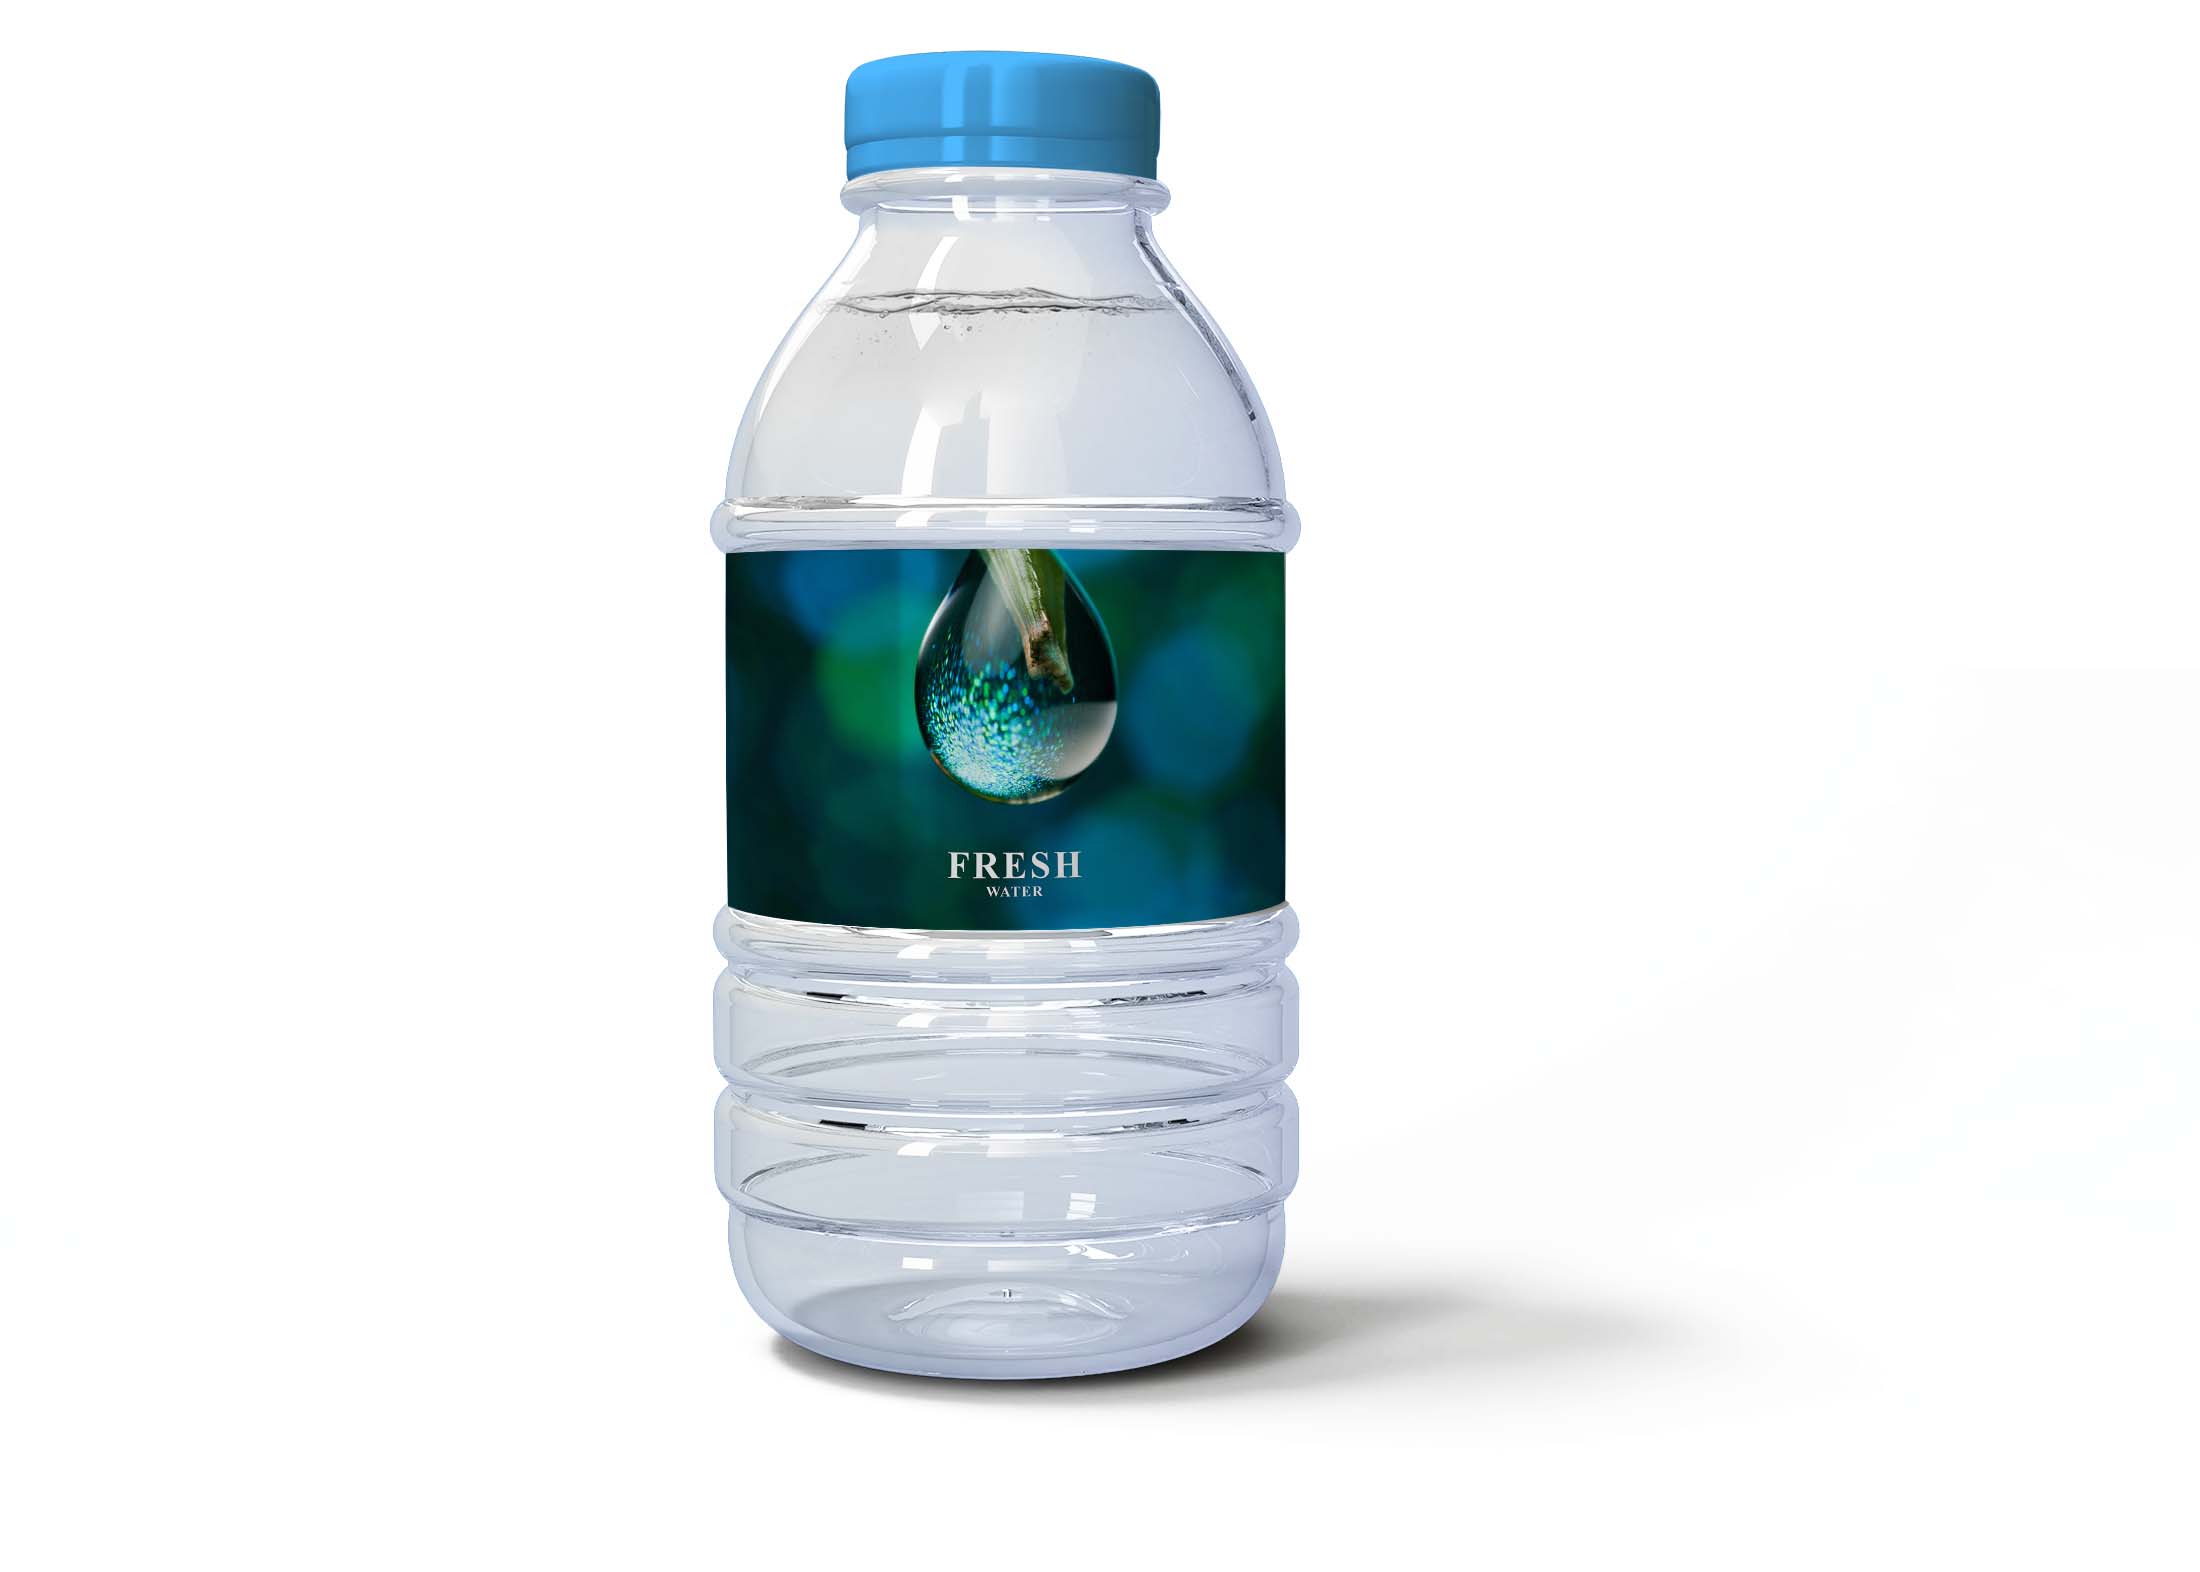 Free PSD Water Bottle Mockup